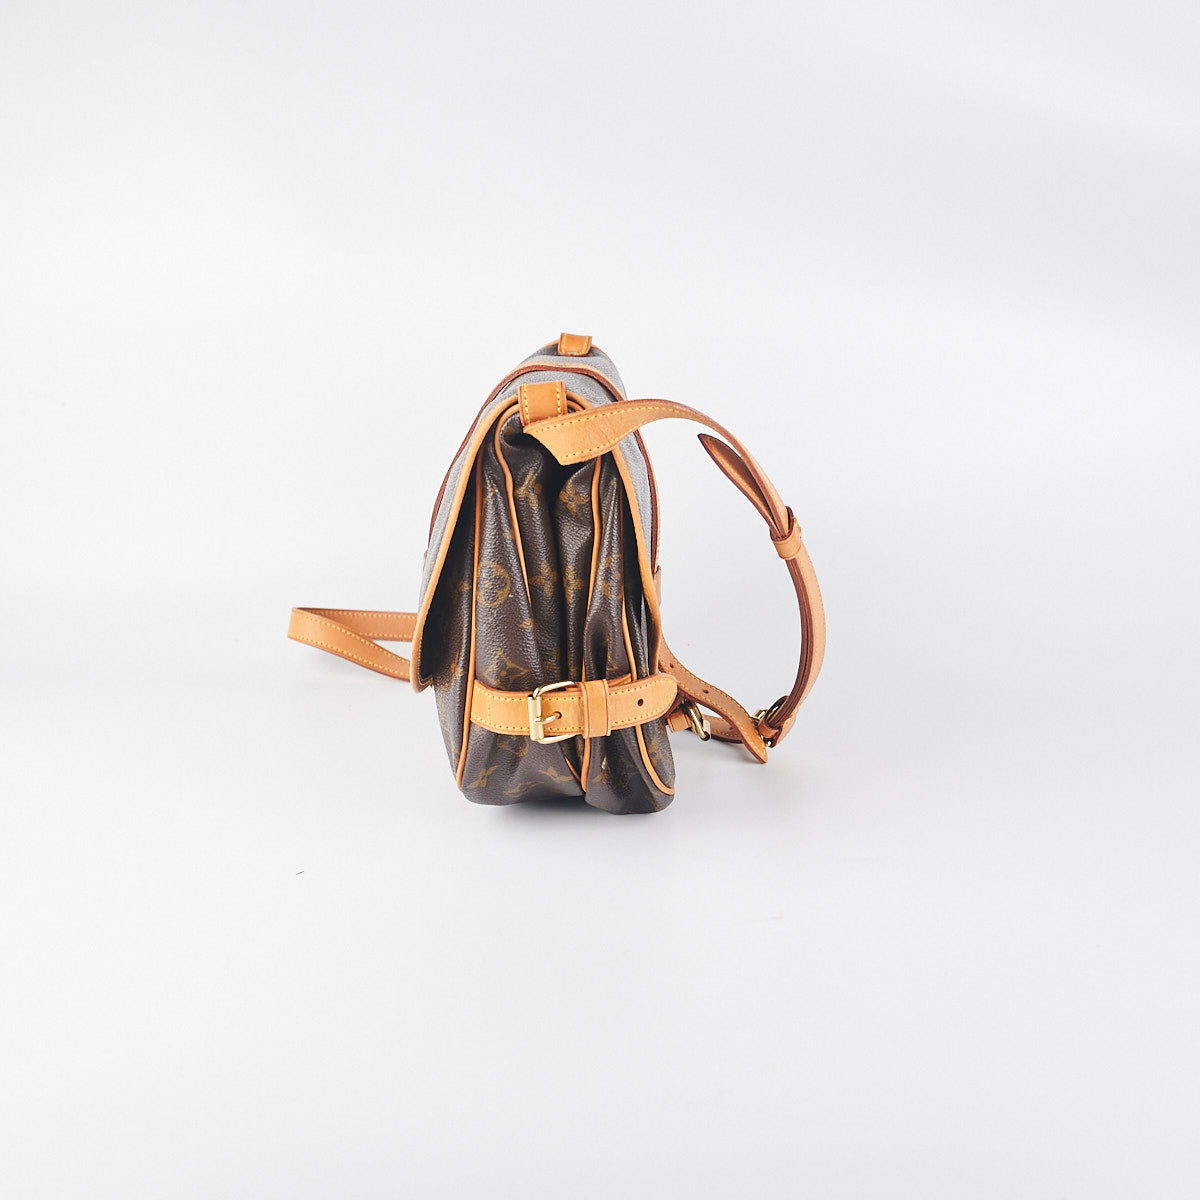 頂級a貨Louis Vuitton M45911 Saumur 手袋斜挎包黑花帆布尺寸